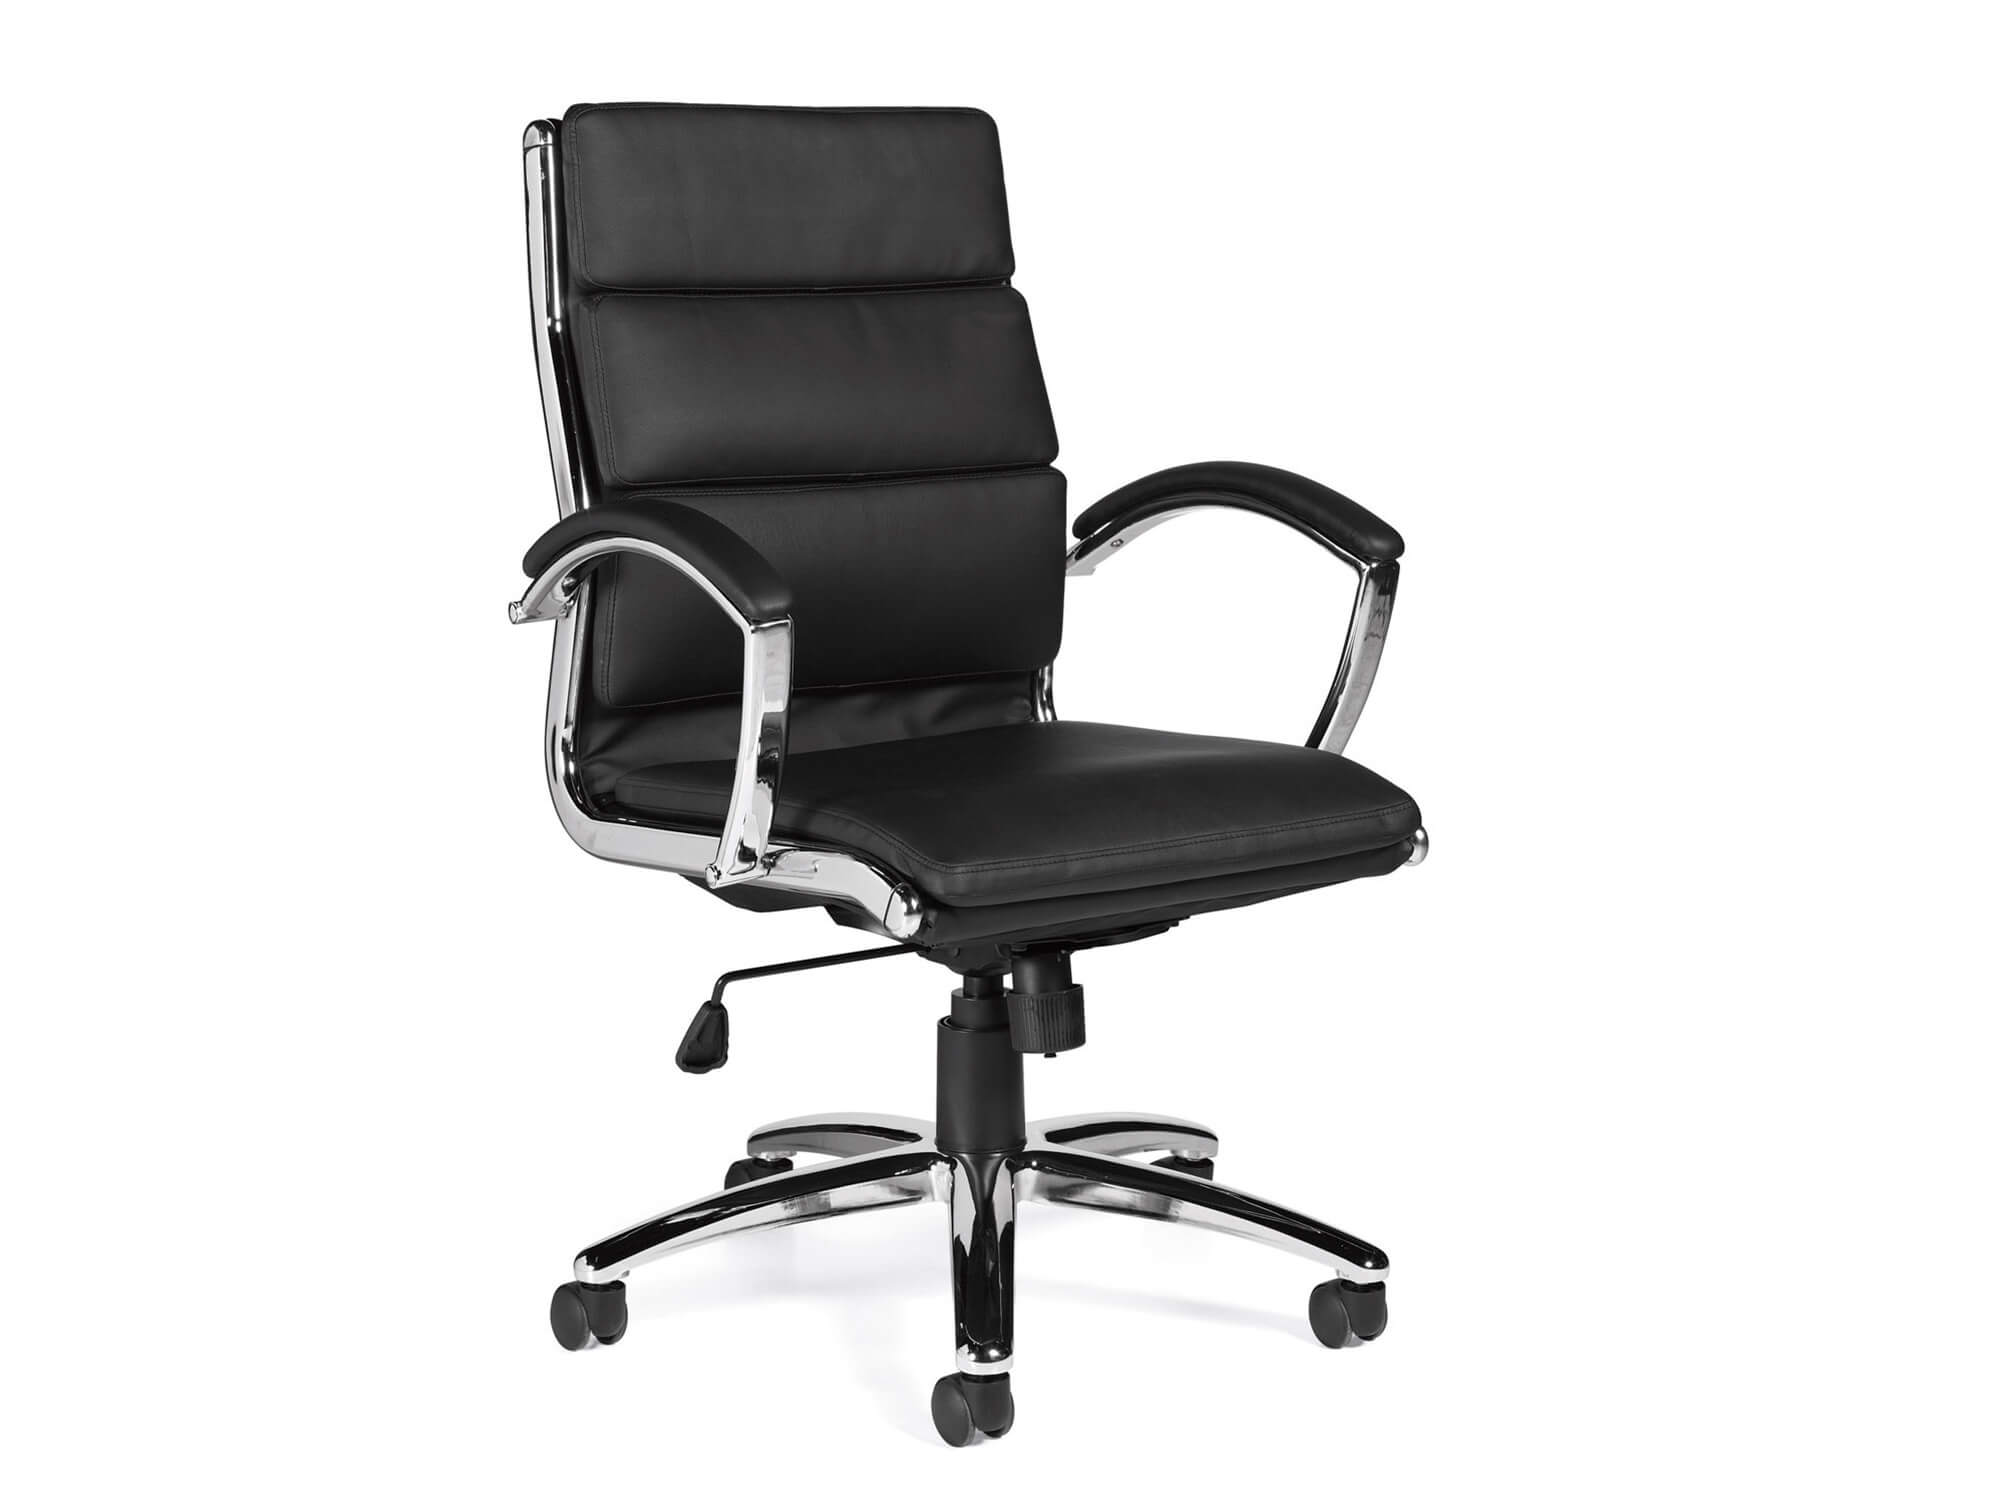 chairs-for-office-segmented-cushion-chair.jpg